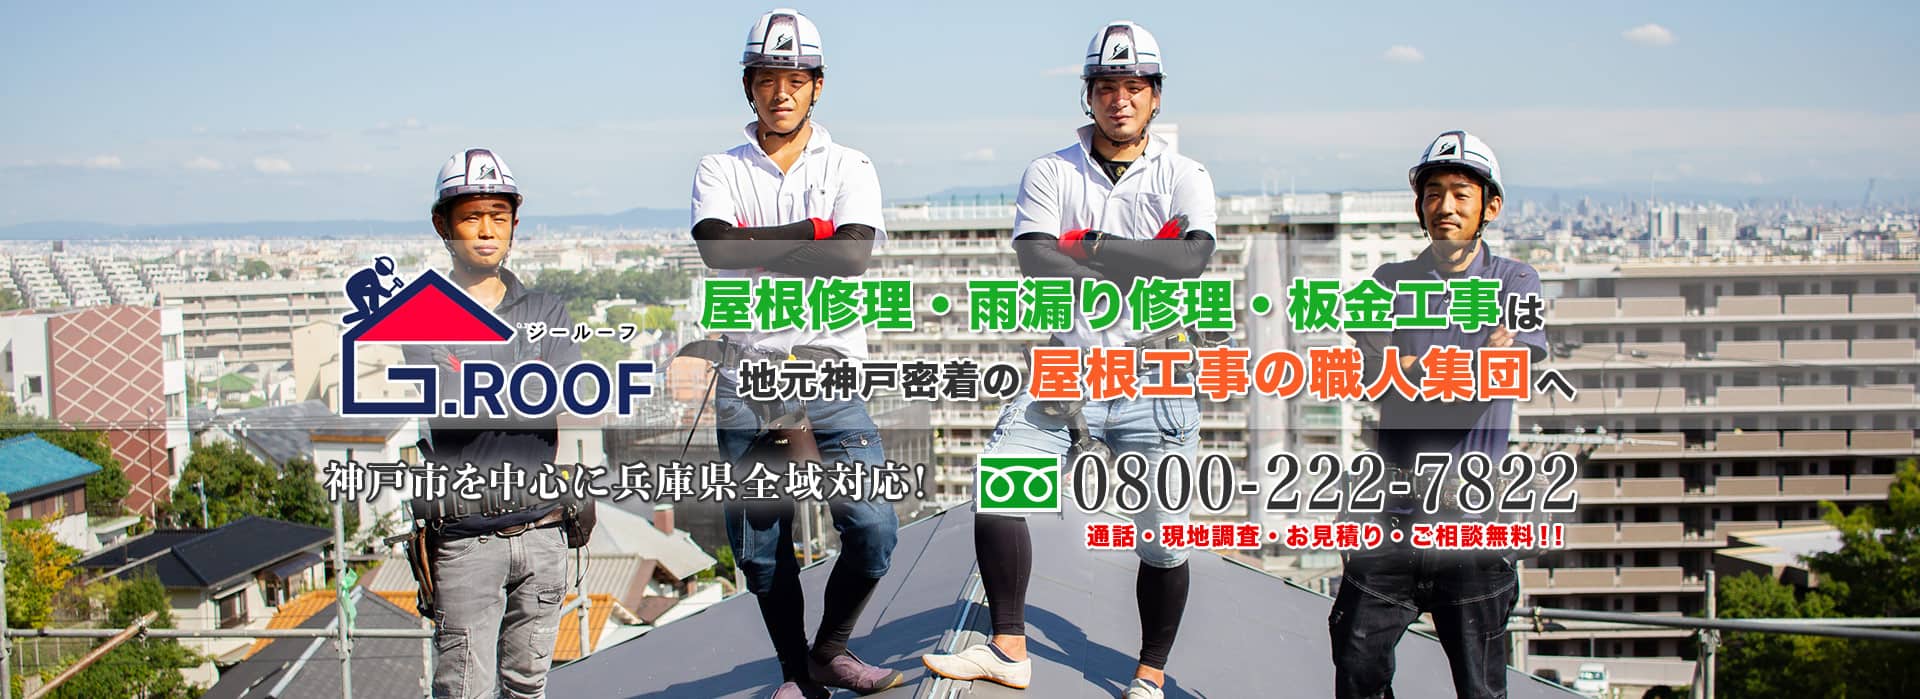 神戸での屋根修理・雨漏り修理・屋根リフォームはG.ROOFへ